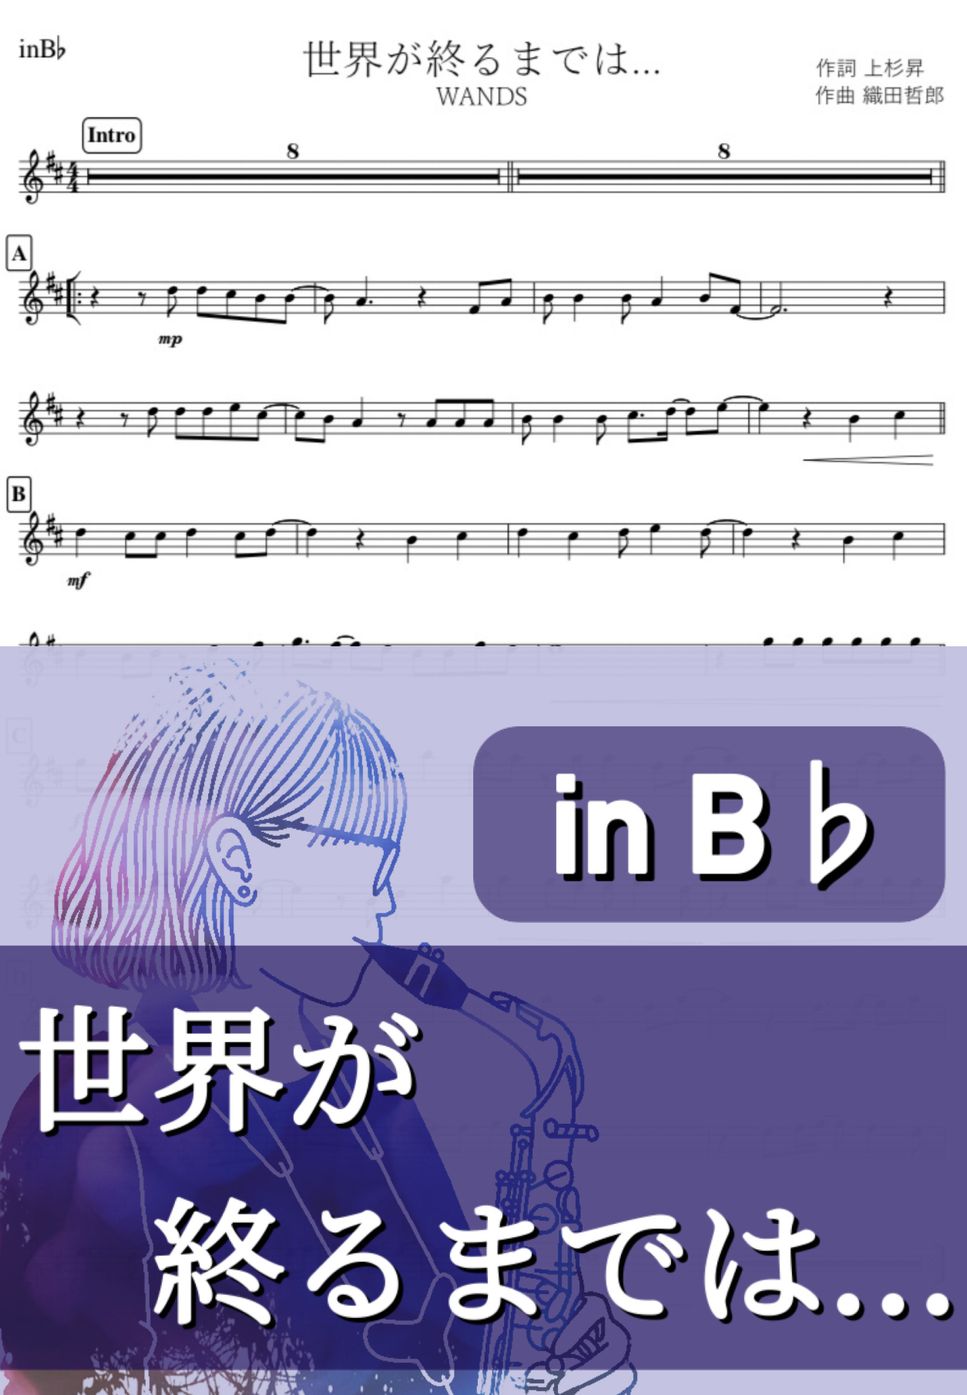 スラムダンク - 世界が終るまでは... (B♭) by kanamusic